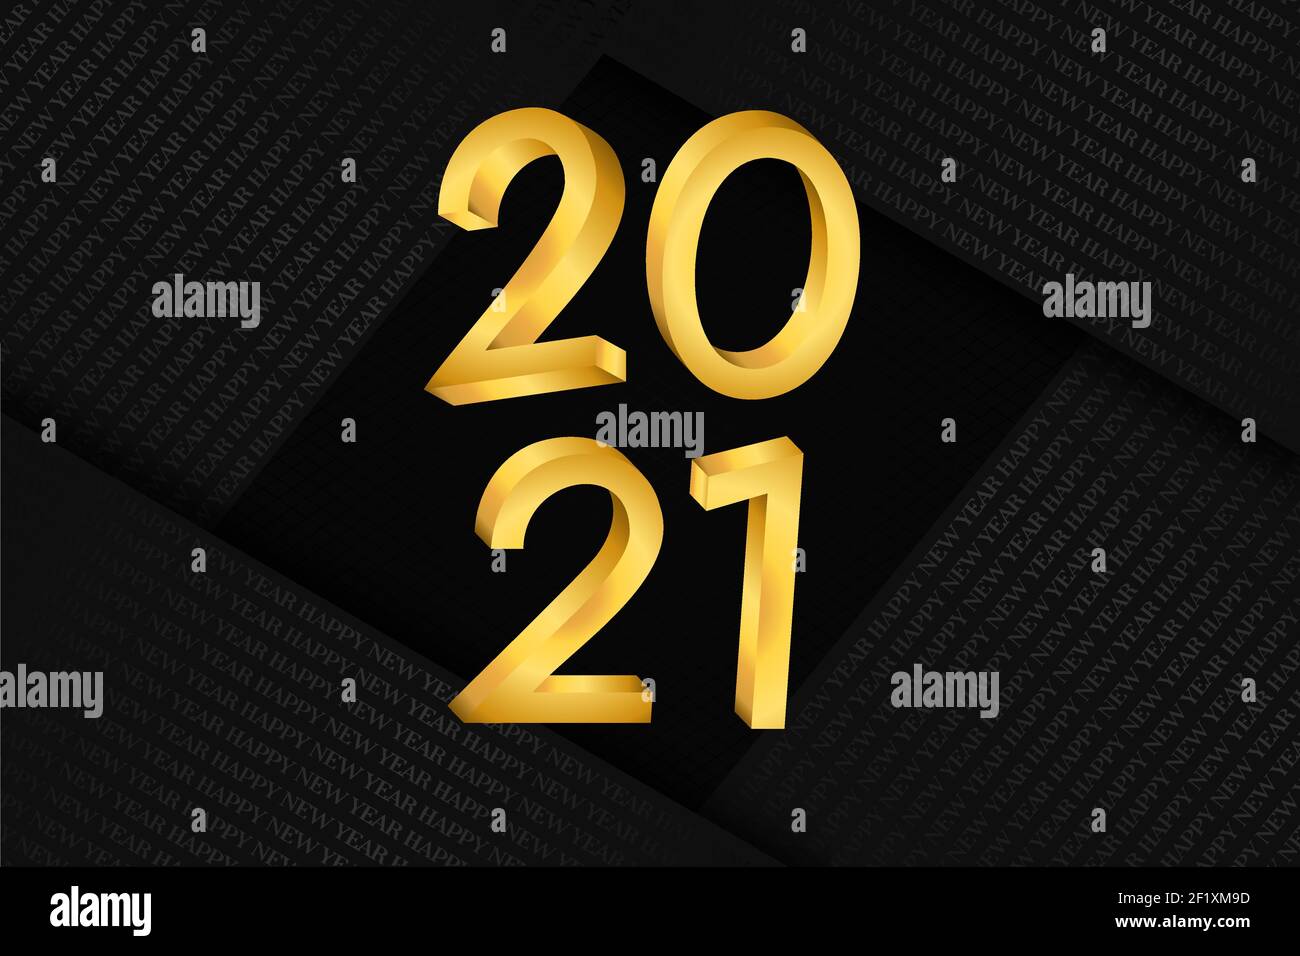 Frohes neues Jahr 2021 Banner. 3D Gold Kalendernummer in Luxus-Gold-Farbe mit schwarzem Papier Falte Hintergrund für Urlaub Event Einladung oder Jahreszeiten gre Stock Vektor